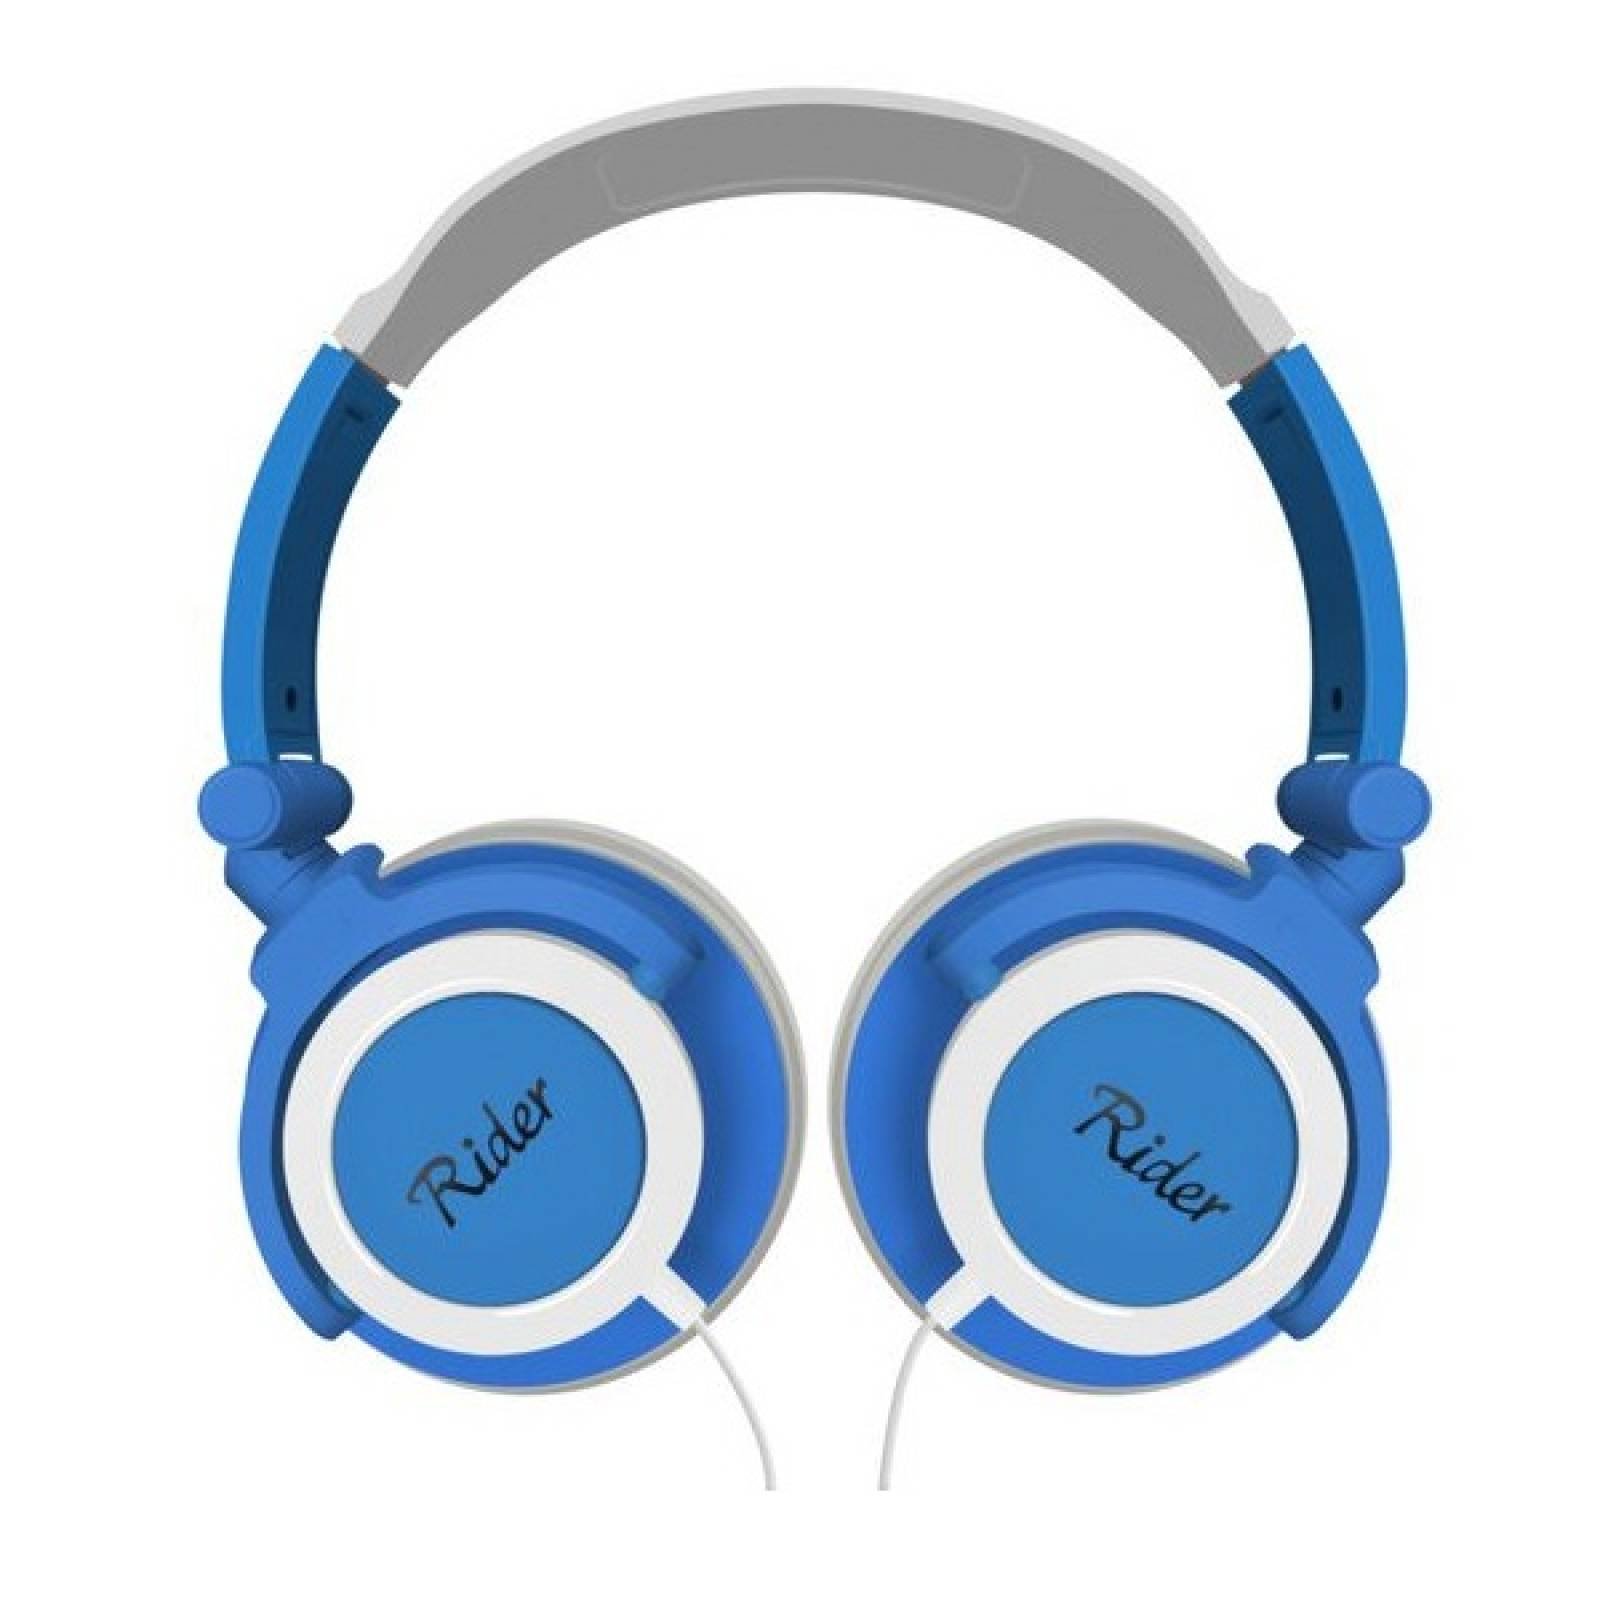 Audifonos Ridgeway On ear Ajuste perfecto EAR105 Azul - Reacondicionado